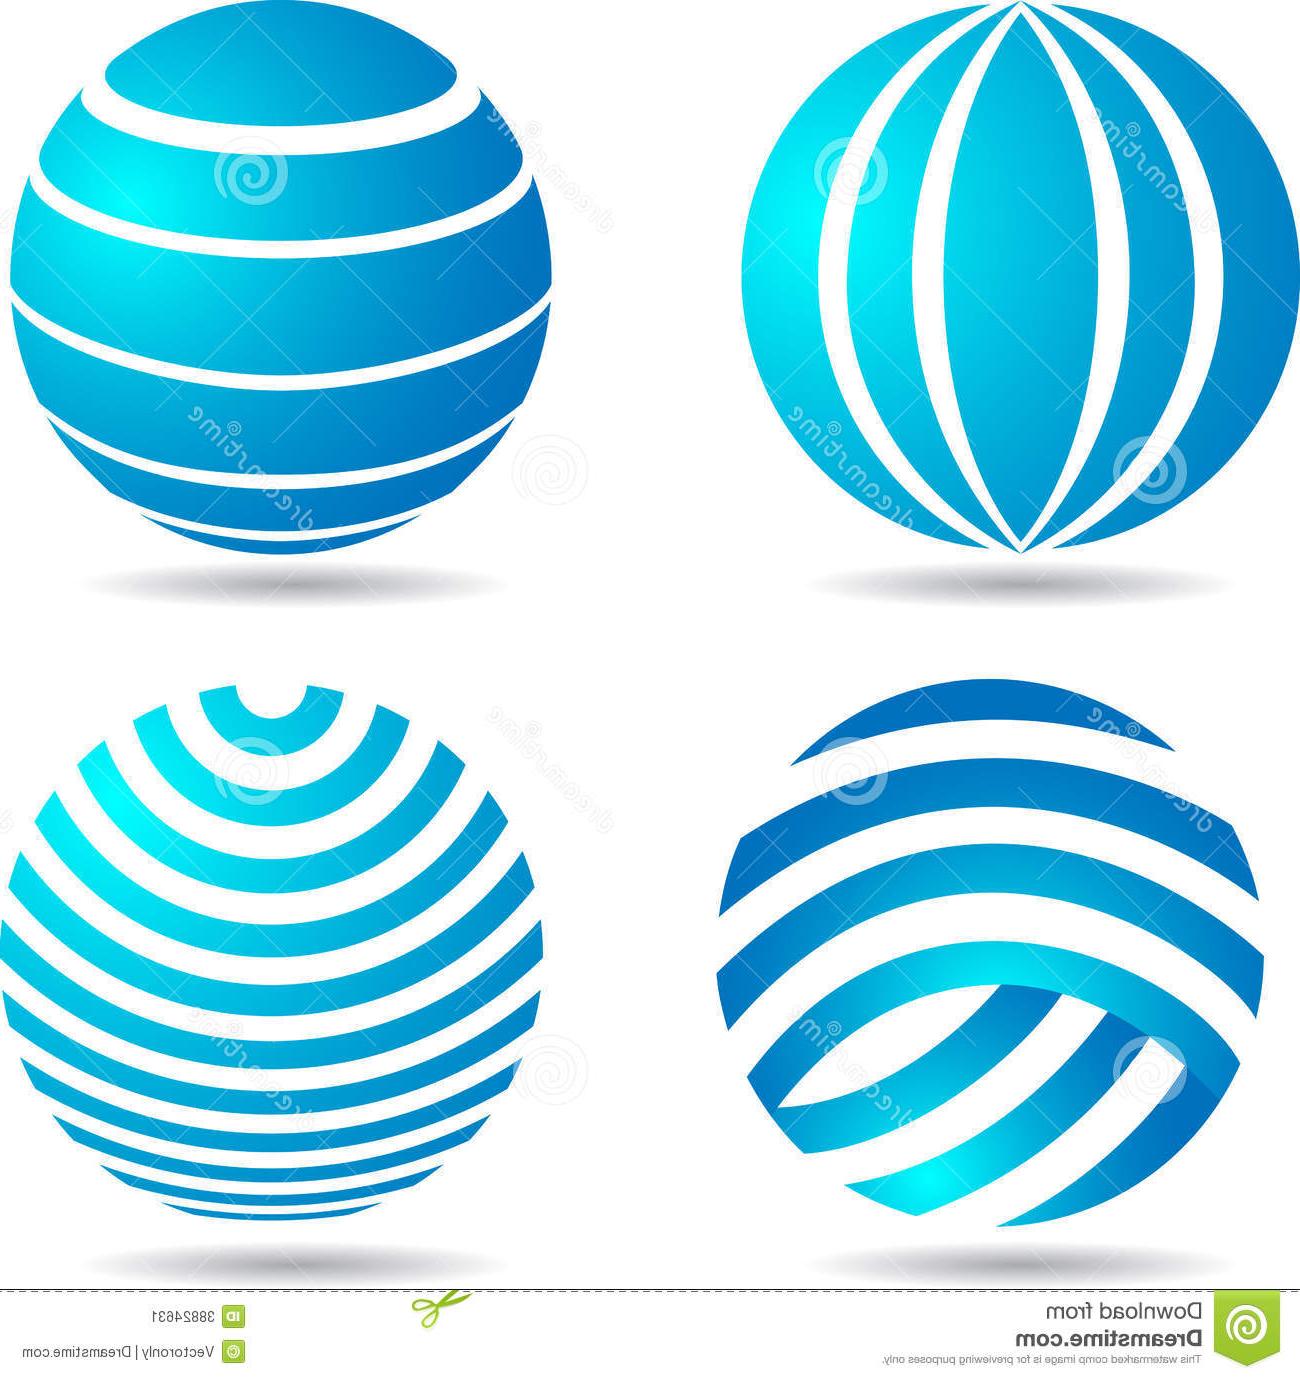 Unique Globe Logo - Unique Globe Logo Vector Illustration Image